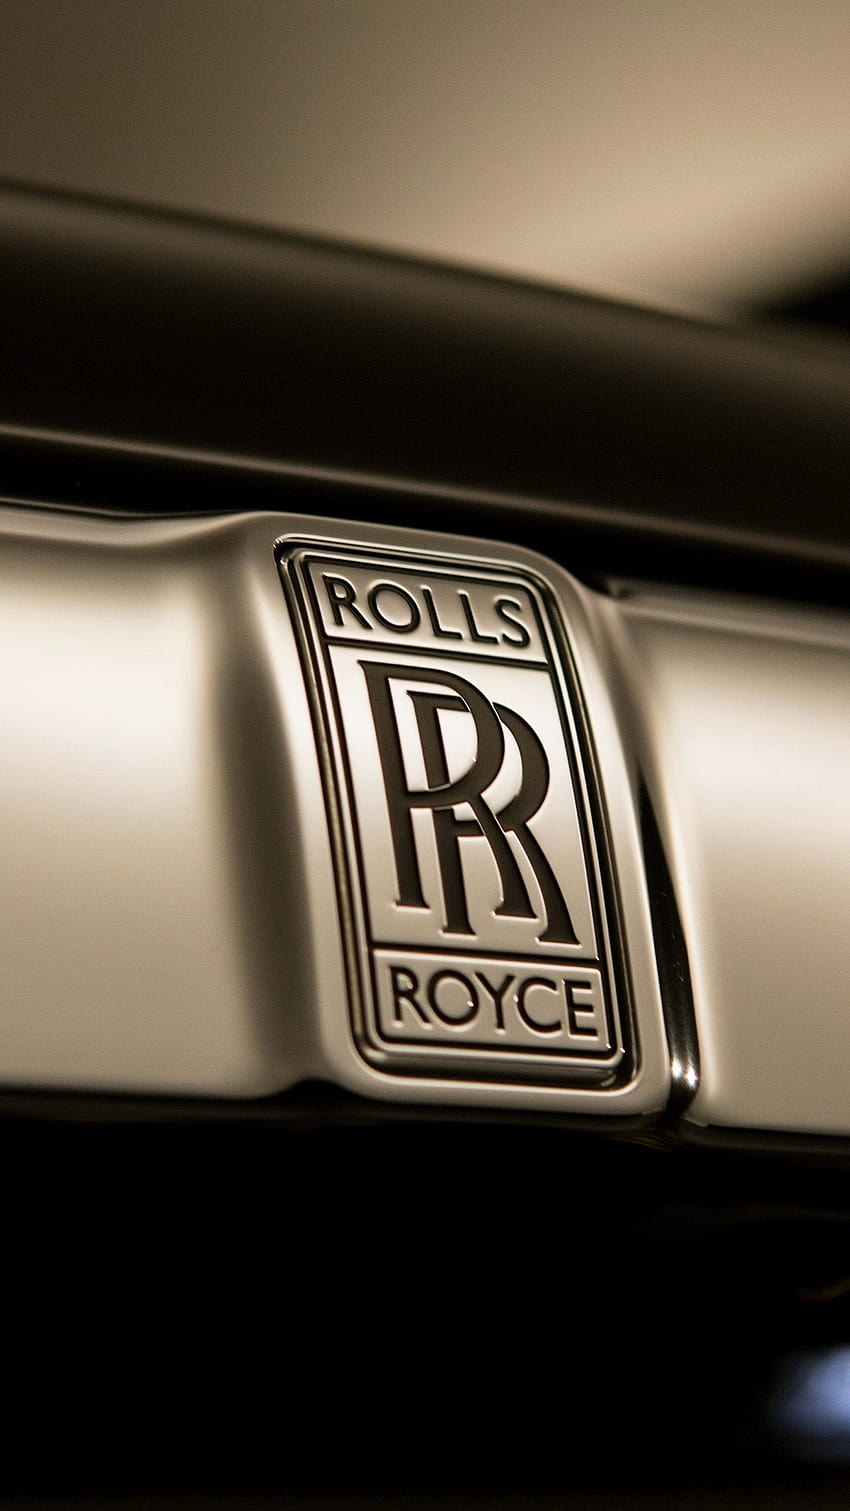 Rolls royce logo HD wallpapers | Pxfuel